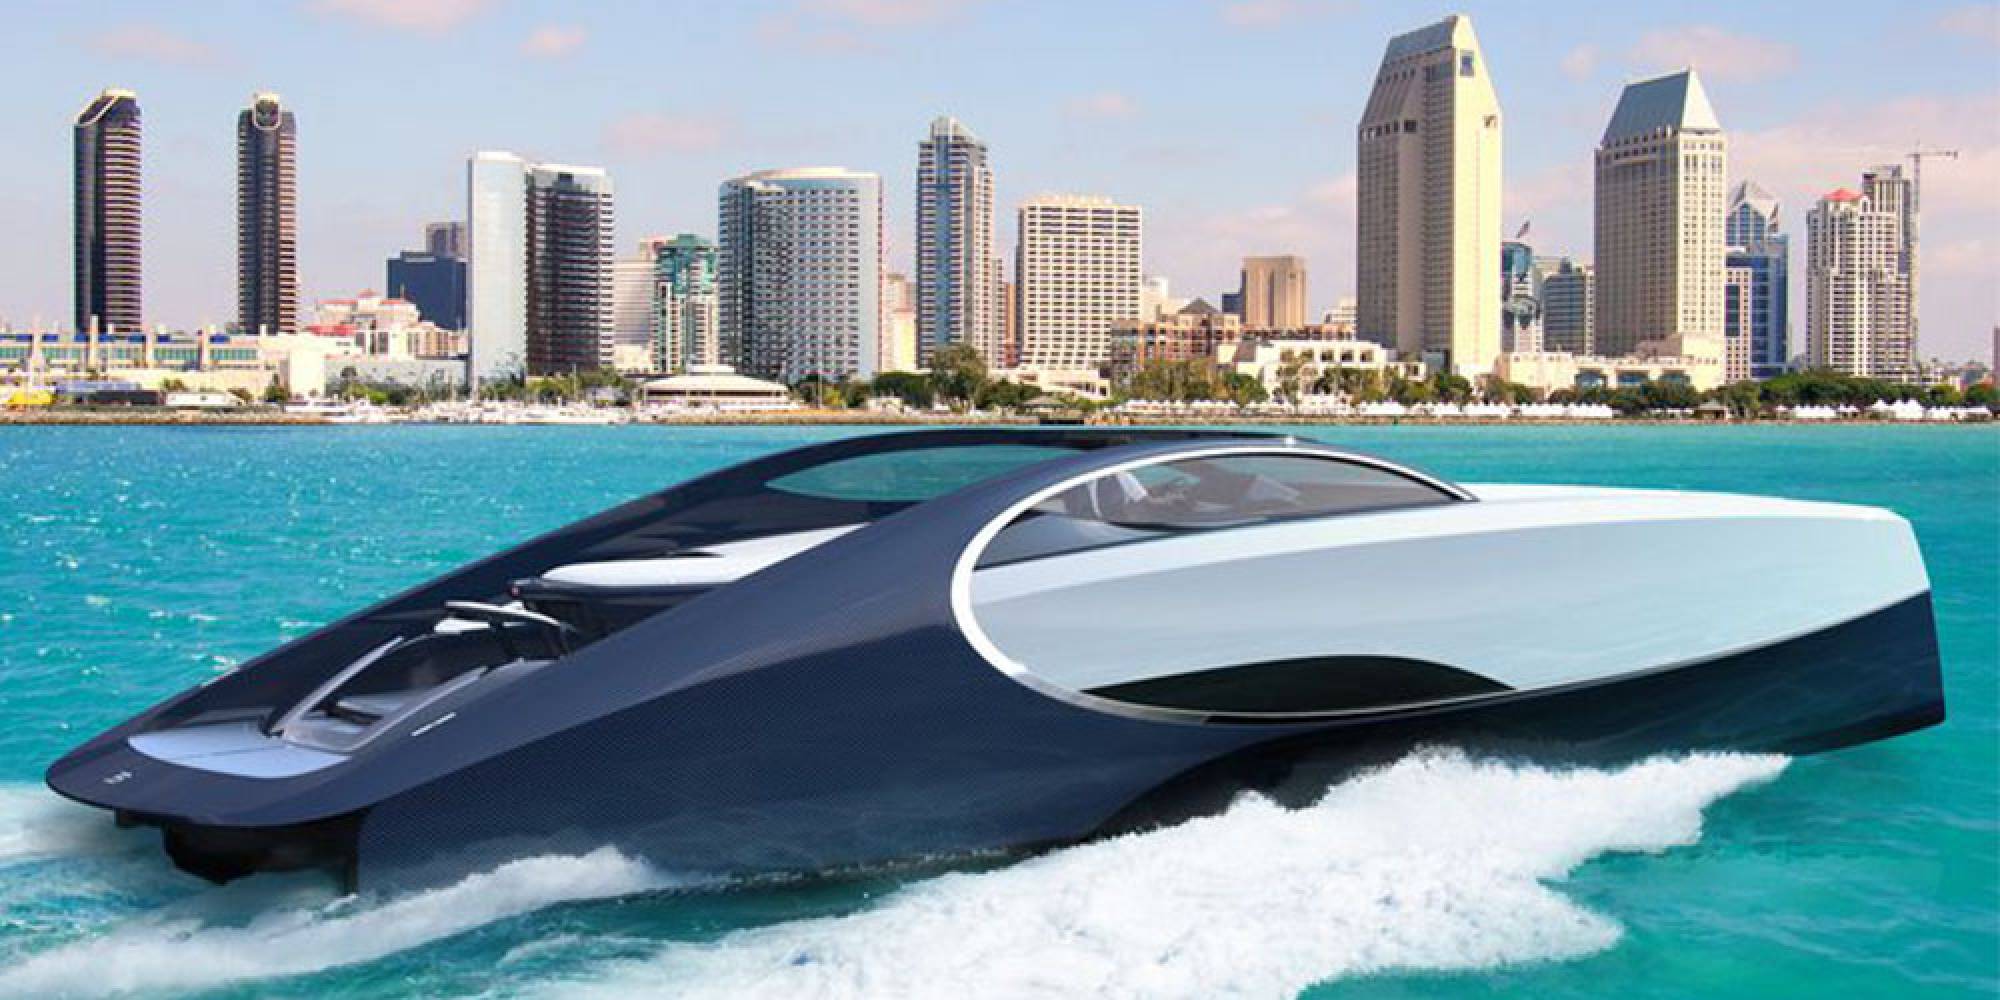 Луксозната яхта Niniette 66 от Bugatti и Palmer Johnson струва 2.2 млн. долара